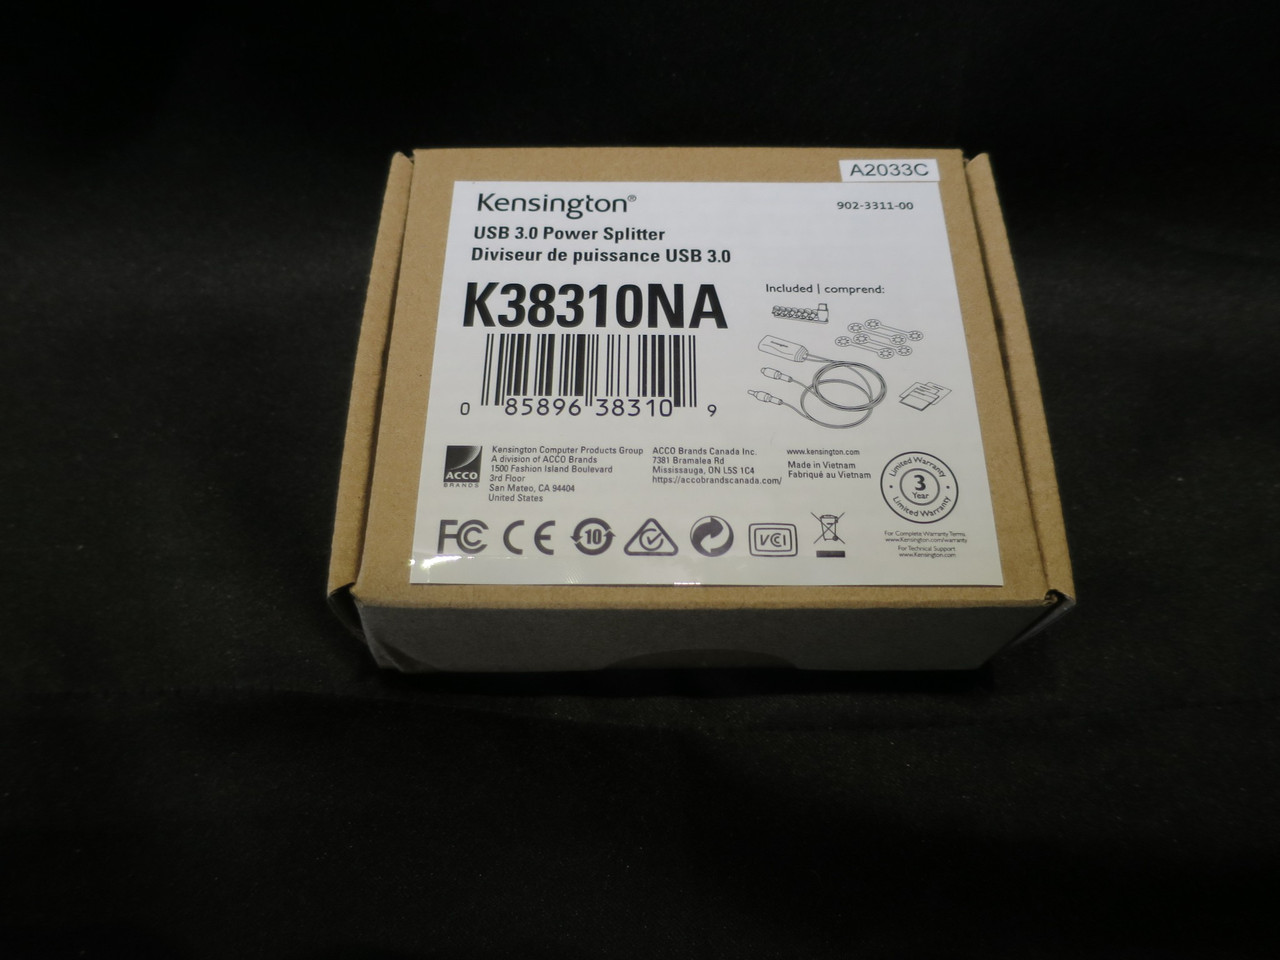 Lot of 4. New Kensington 60w USB 3.0 Power Splitter K38310NA